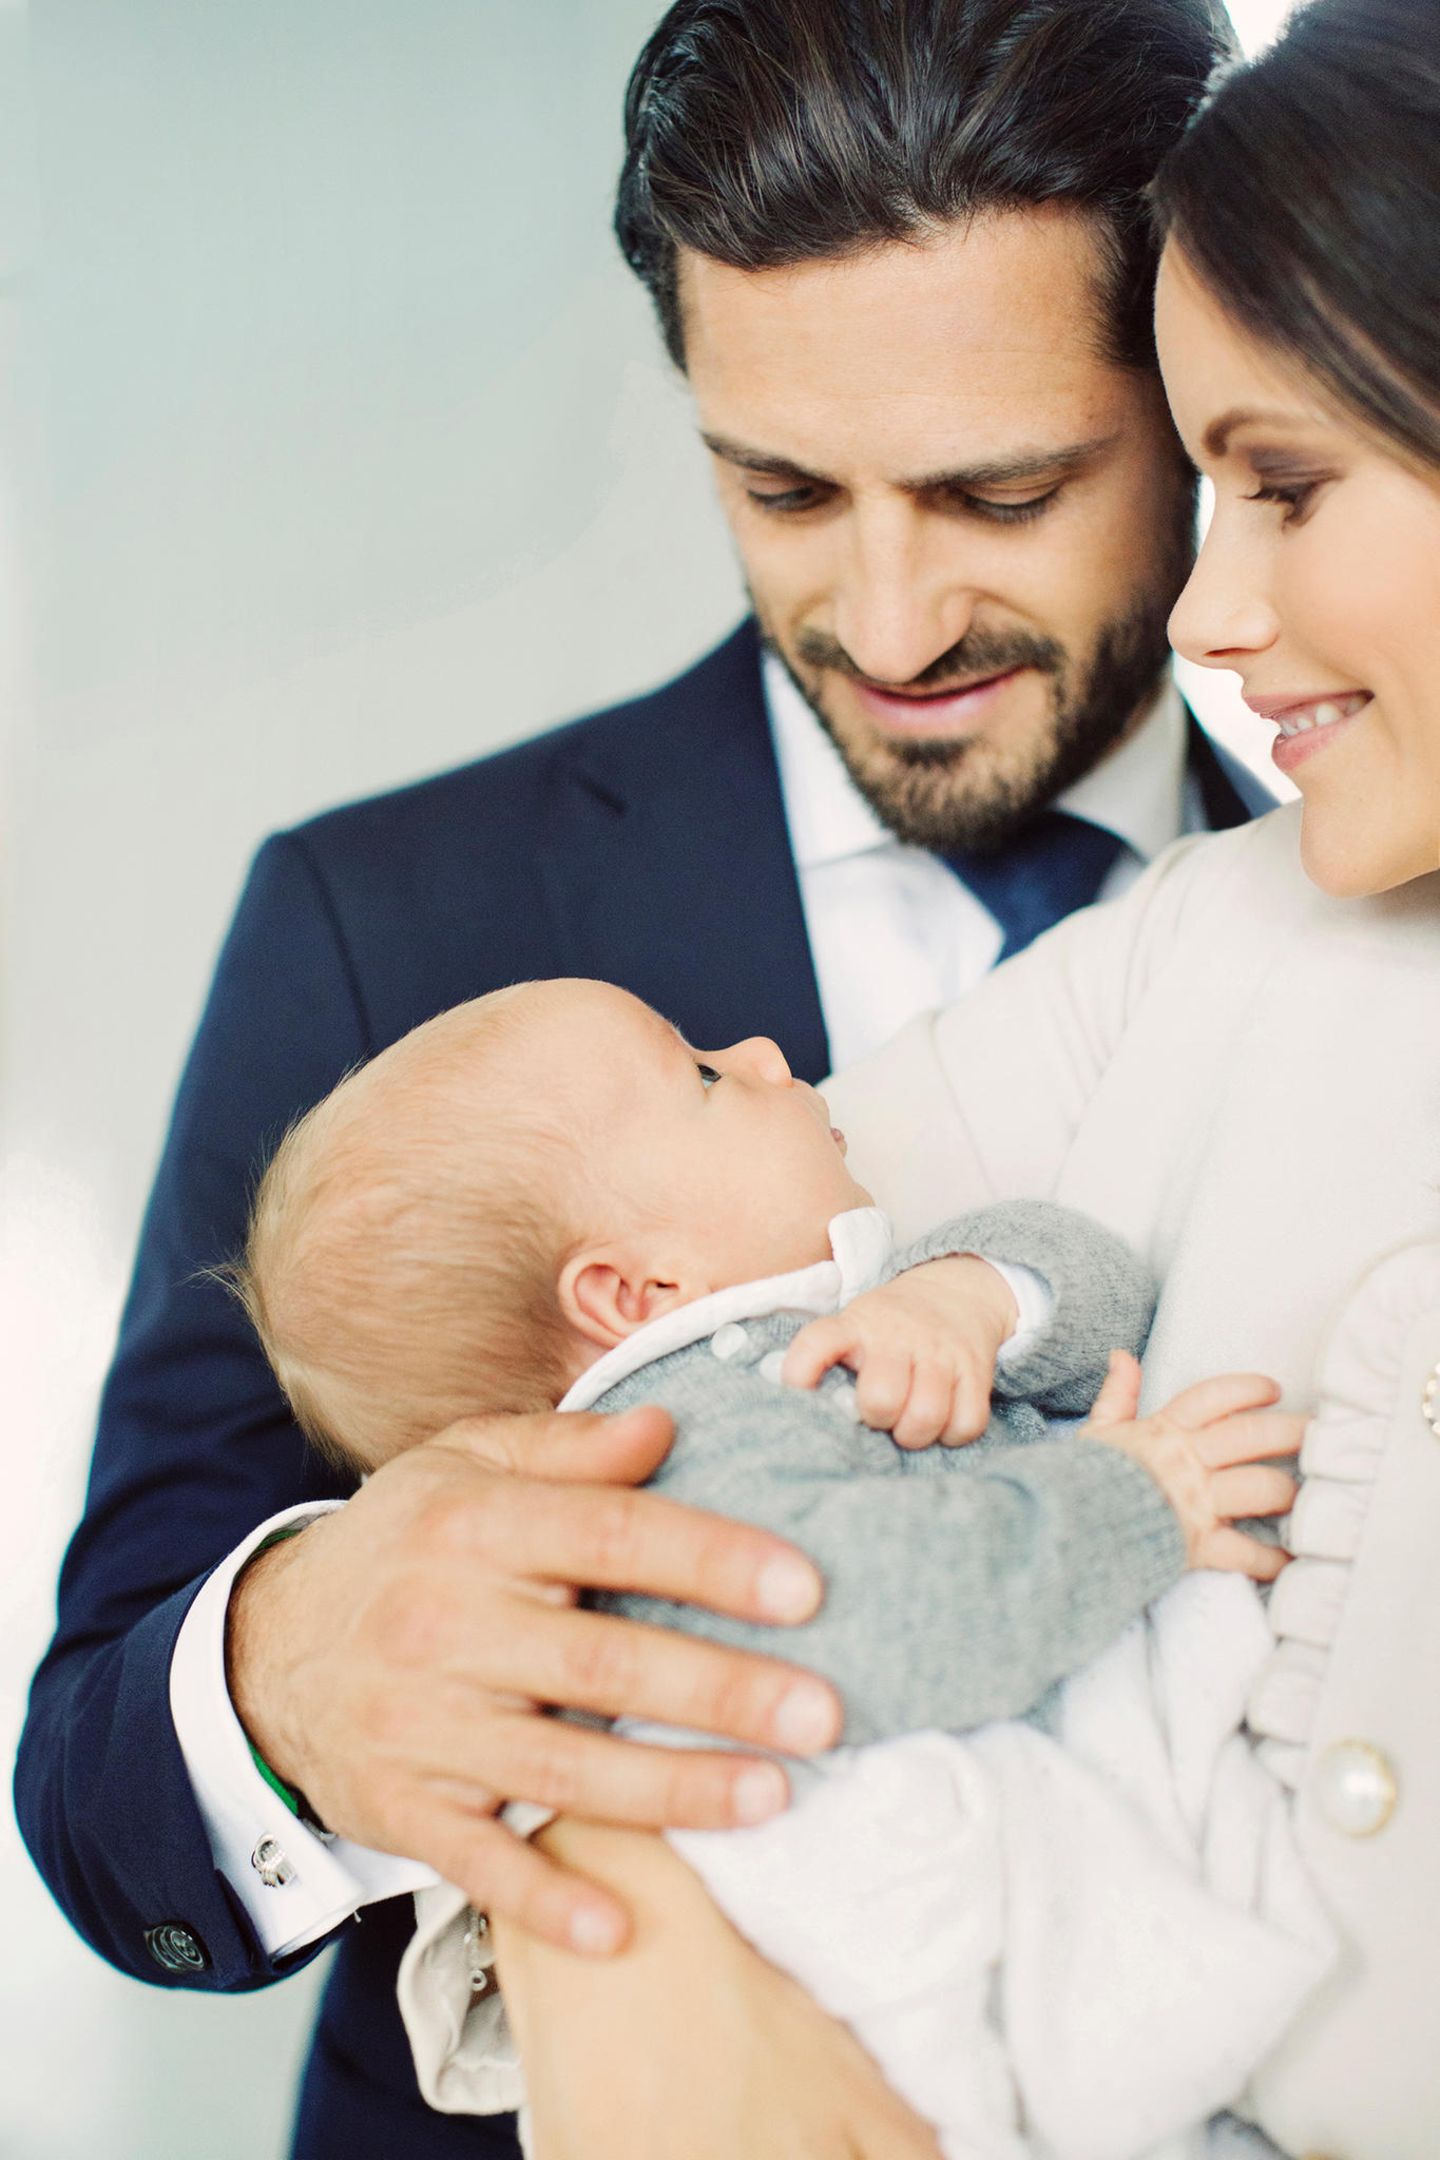 9. Oktober 2017  In diesem Bild von Prinzessin Sofia, Prinz Carl Philip und ihrem kleinen Gabriel steckt ganz viel Liebe drin - eins der zwei offiziellen Familienbilder, die das Prinzenpaar im Oktober veröffentlichte, um sich für die vielen Glückwünsche zur Geburt zu bedanken.